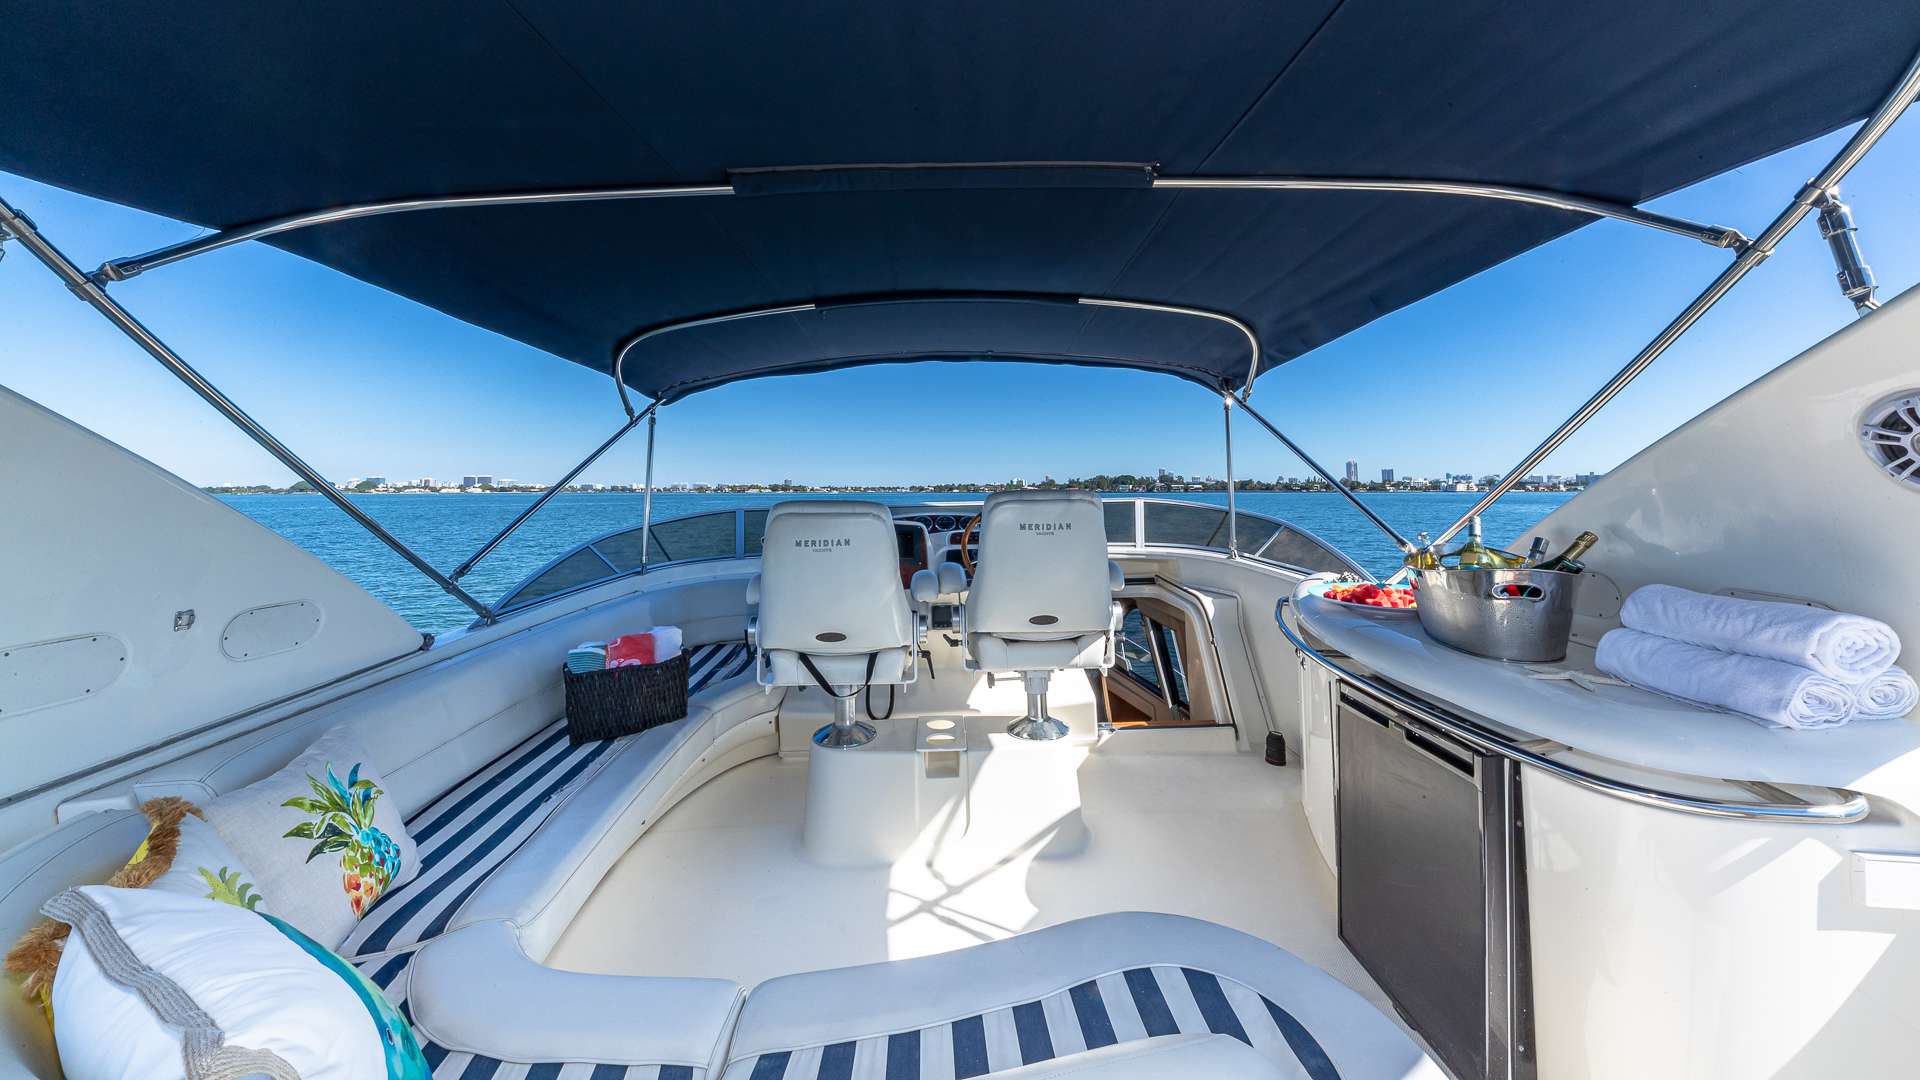 ELEGANT LADY - Luxury yacht charter Bahamas & Boat hire in Florida & Bahamas 4